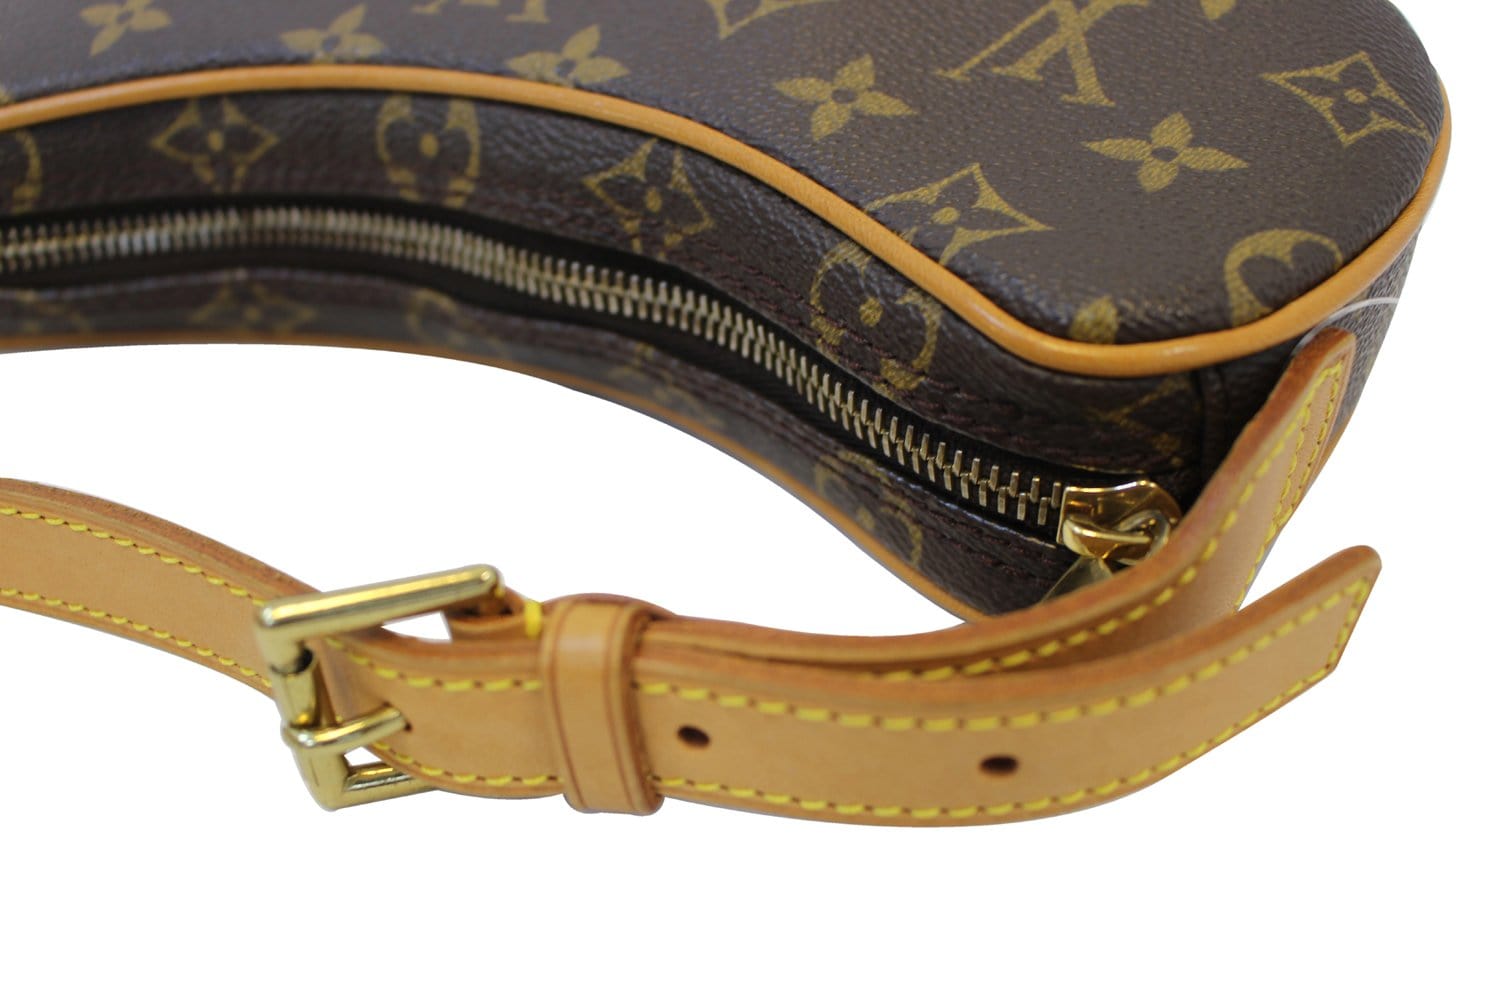 Louis Vuitton Croissant Handbag Monogram Canvas MM - ShopStyle